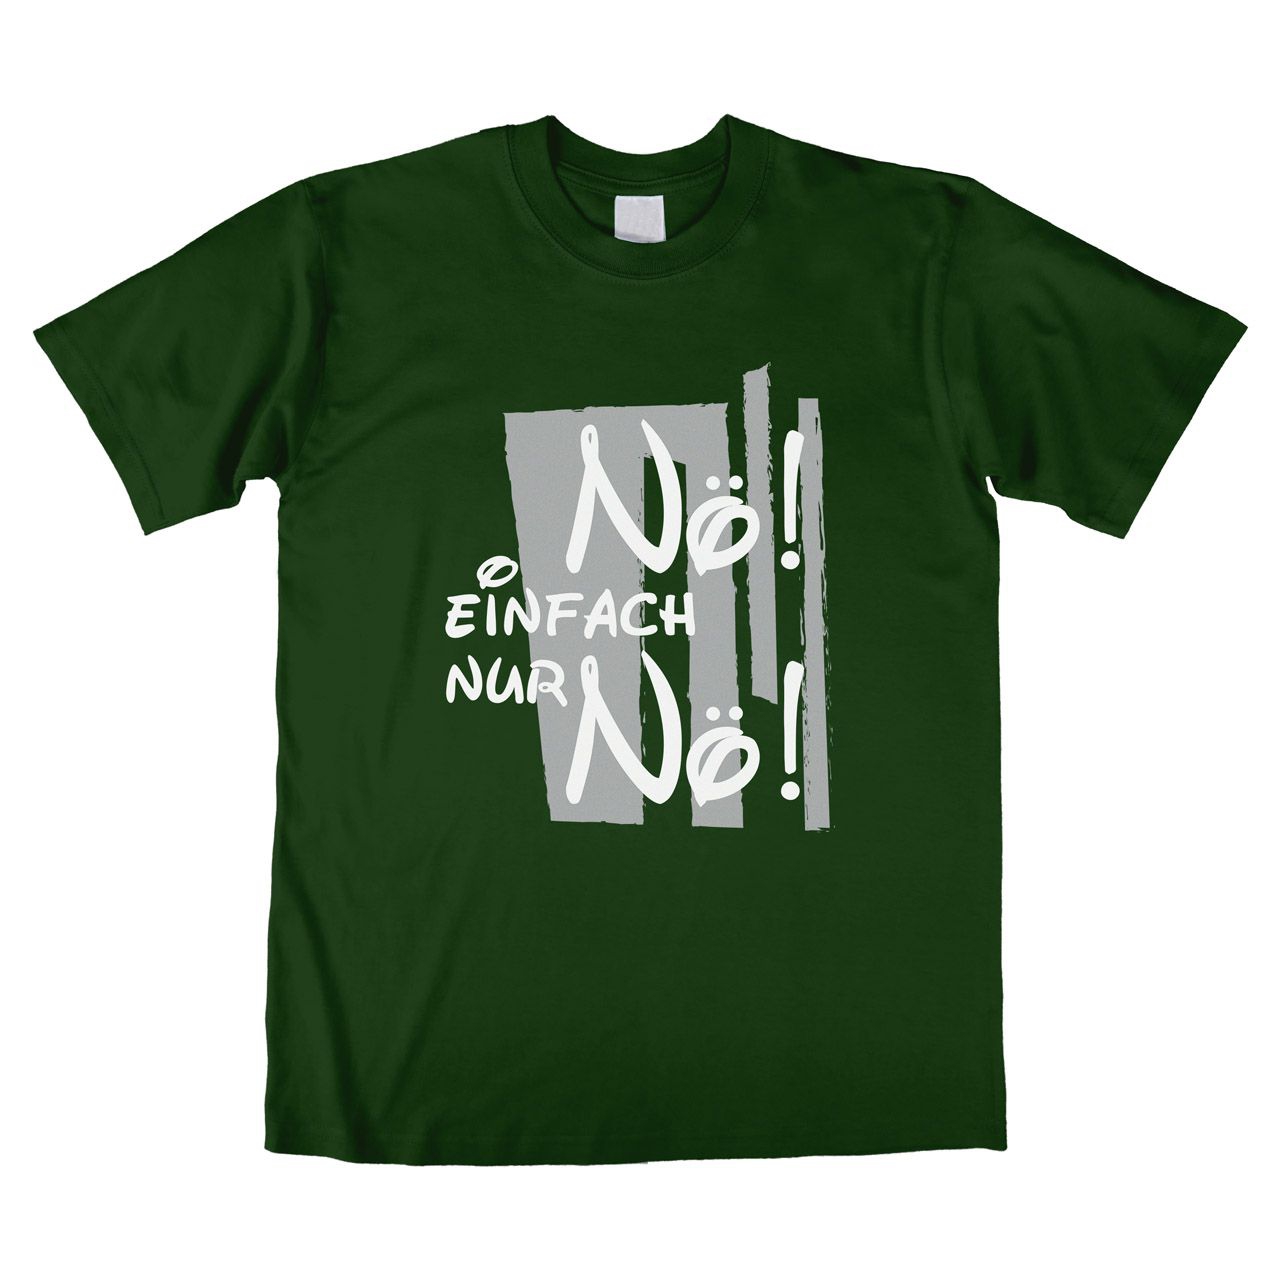 Nö einfach Nö Unisex T-Shirt dunkelgrün Small